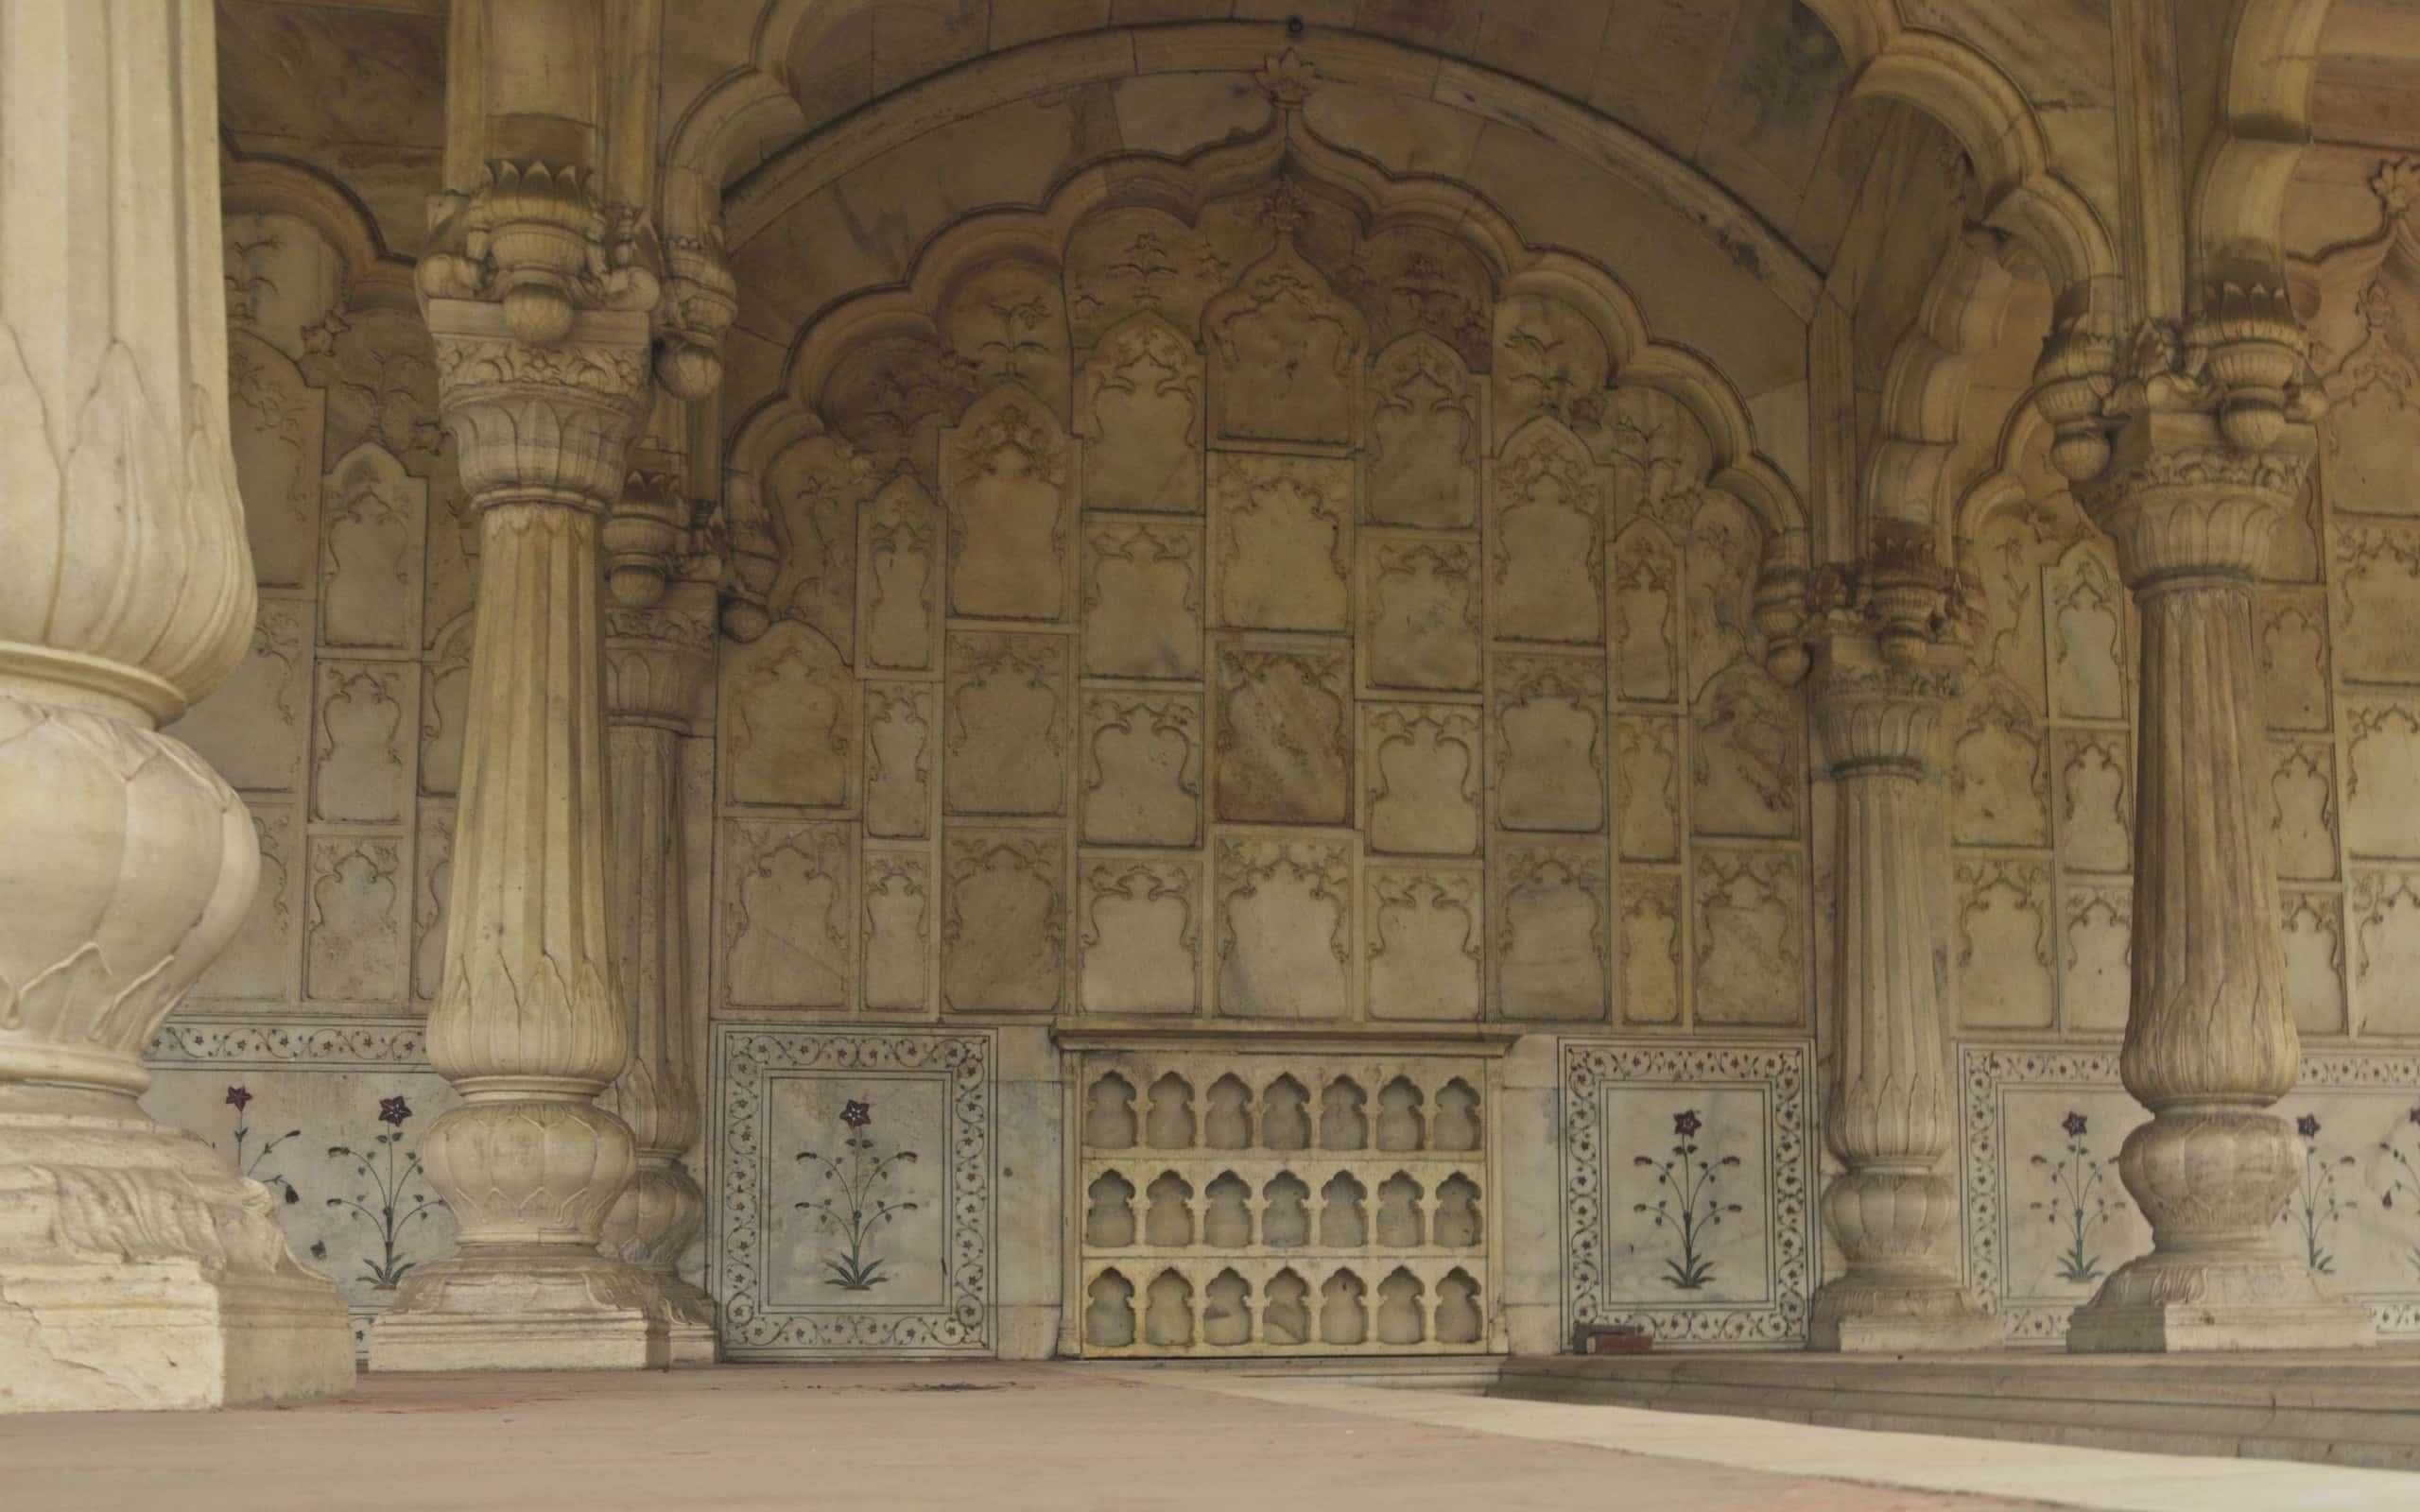 edificio dell'era moghul all'interno del sito patrimonio mondiale dell'unesco, forte rosso, vecchia delhi, india